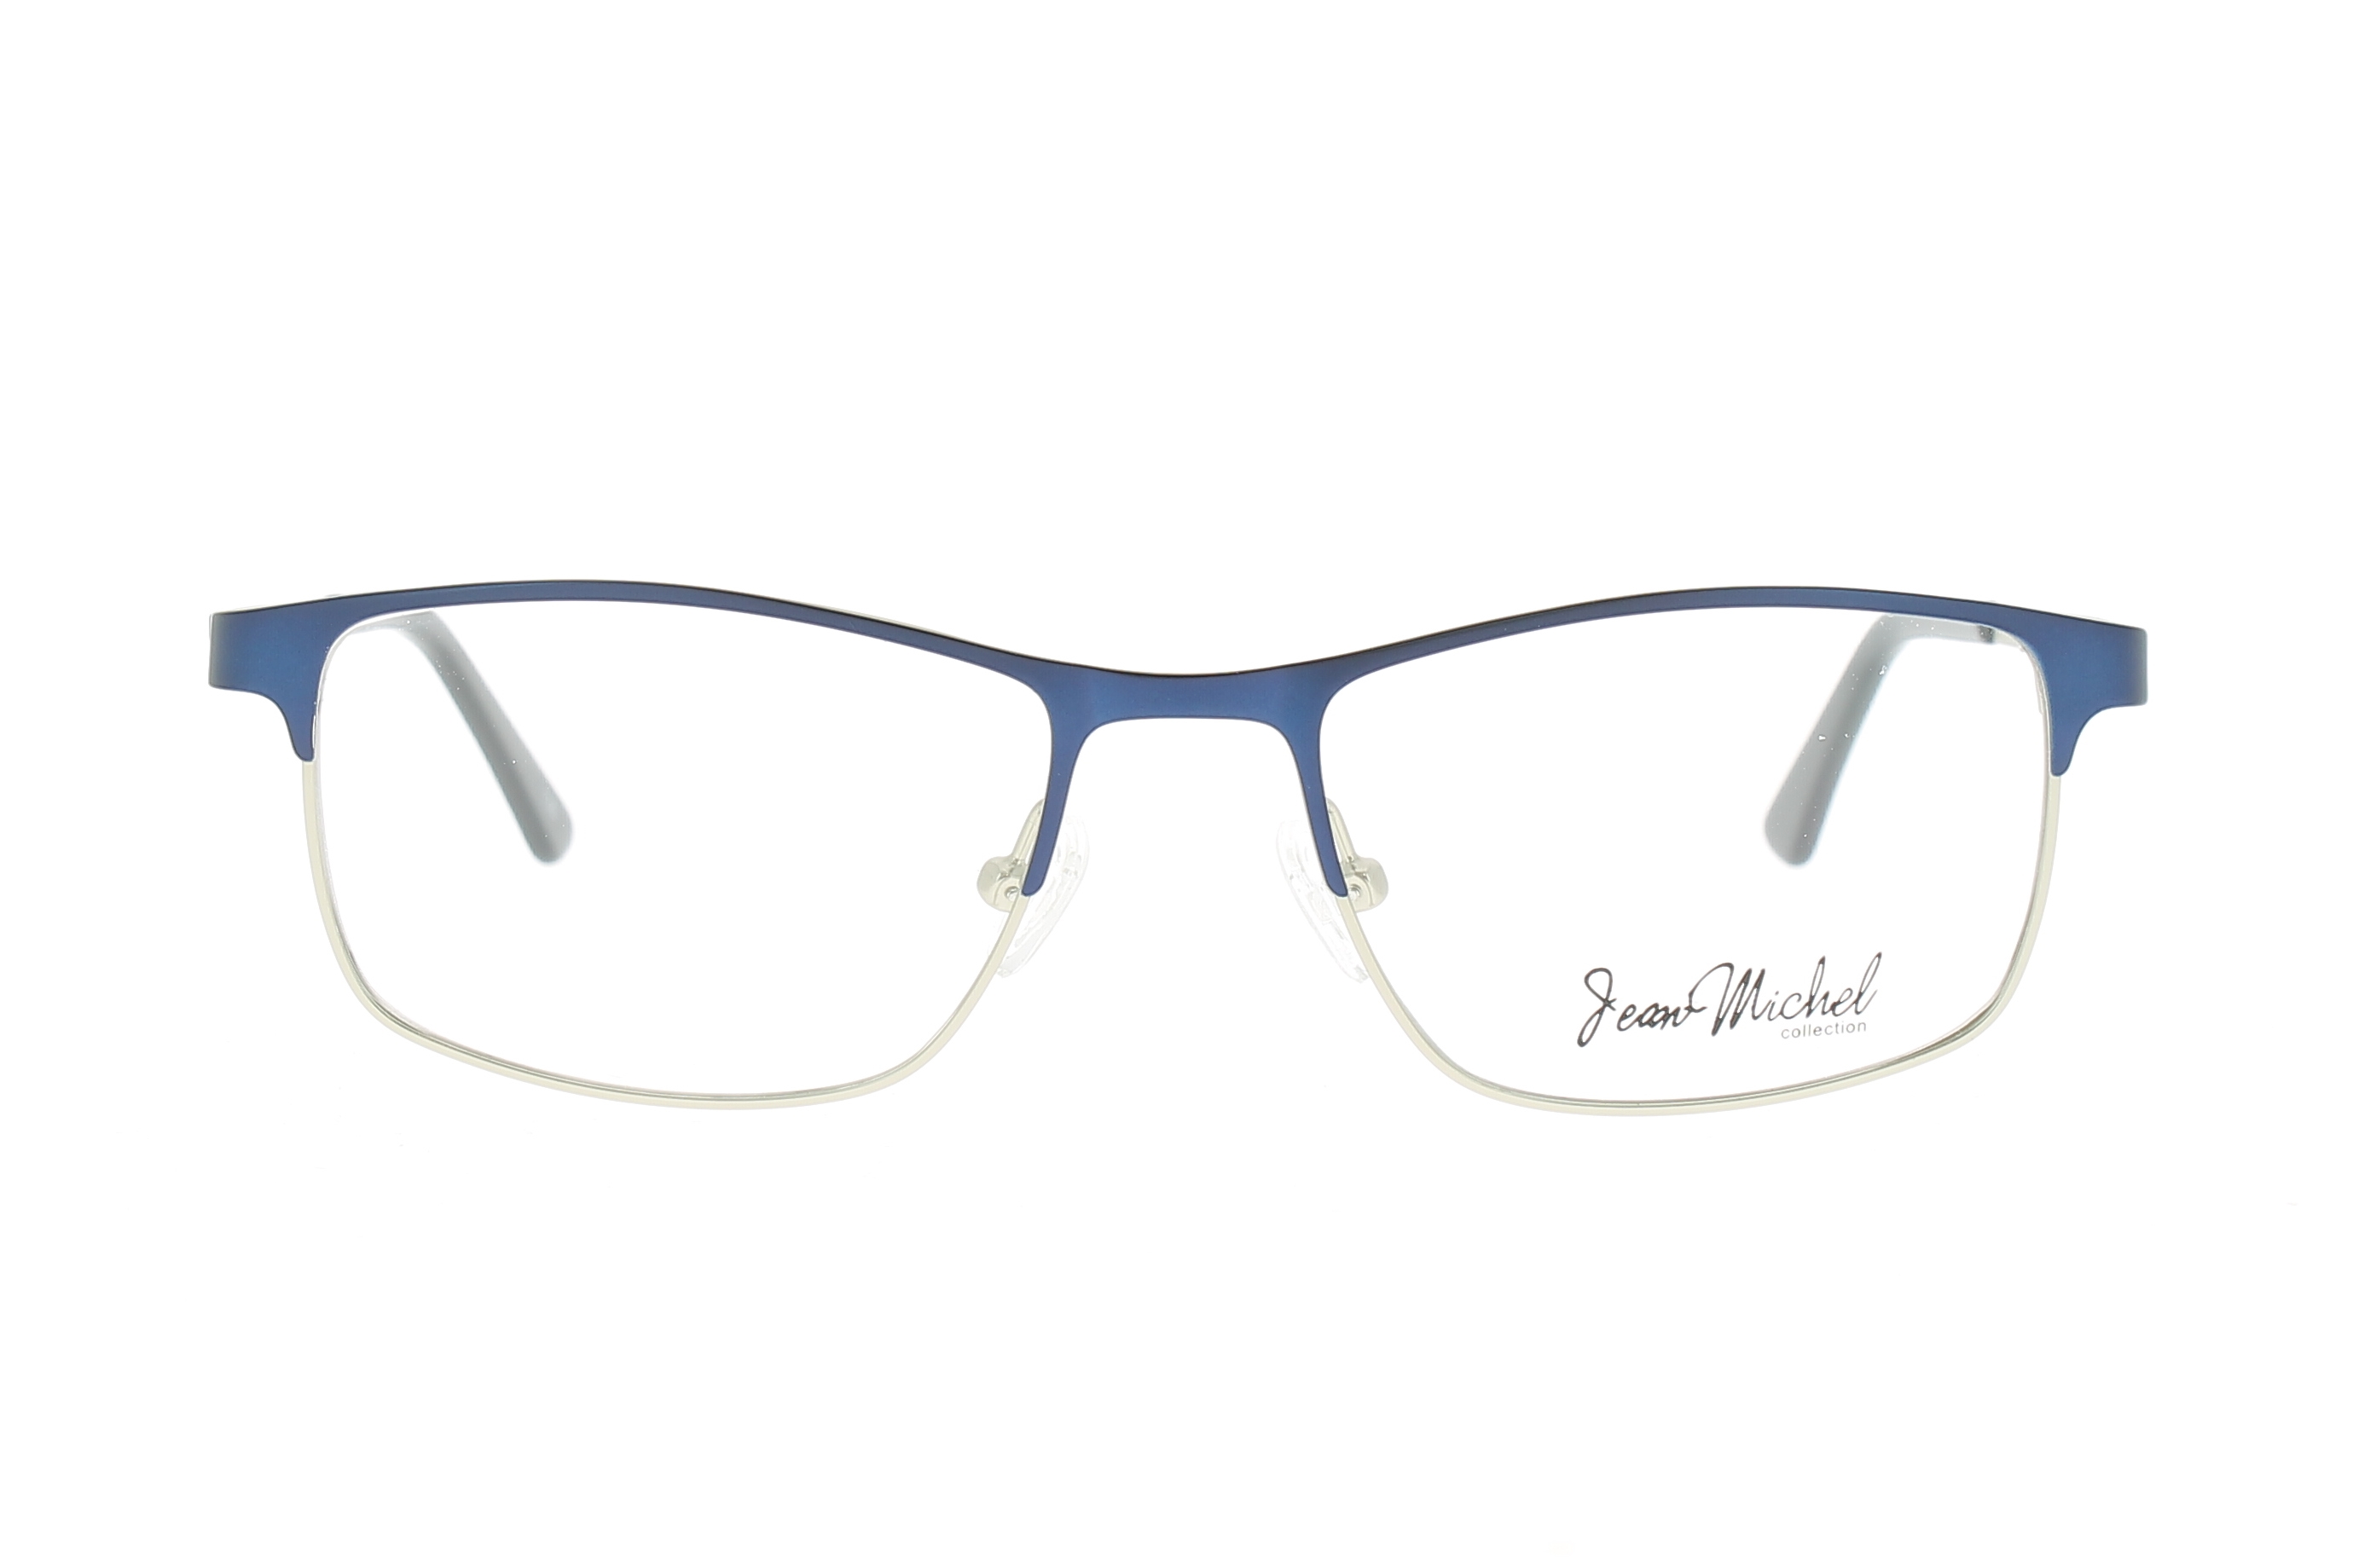 Glasses Chouchous 2459, dark blue colour - Doyle